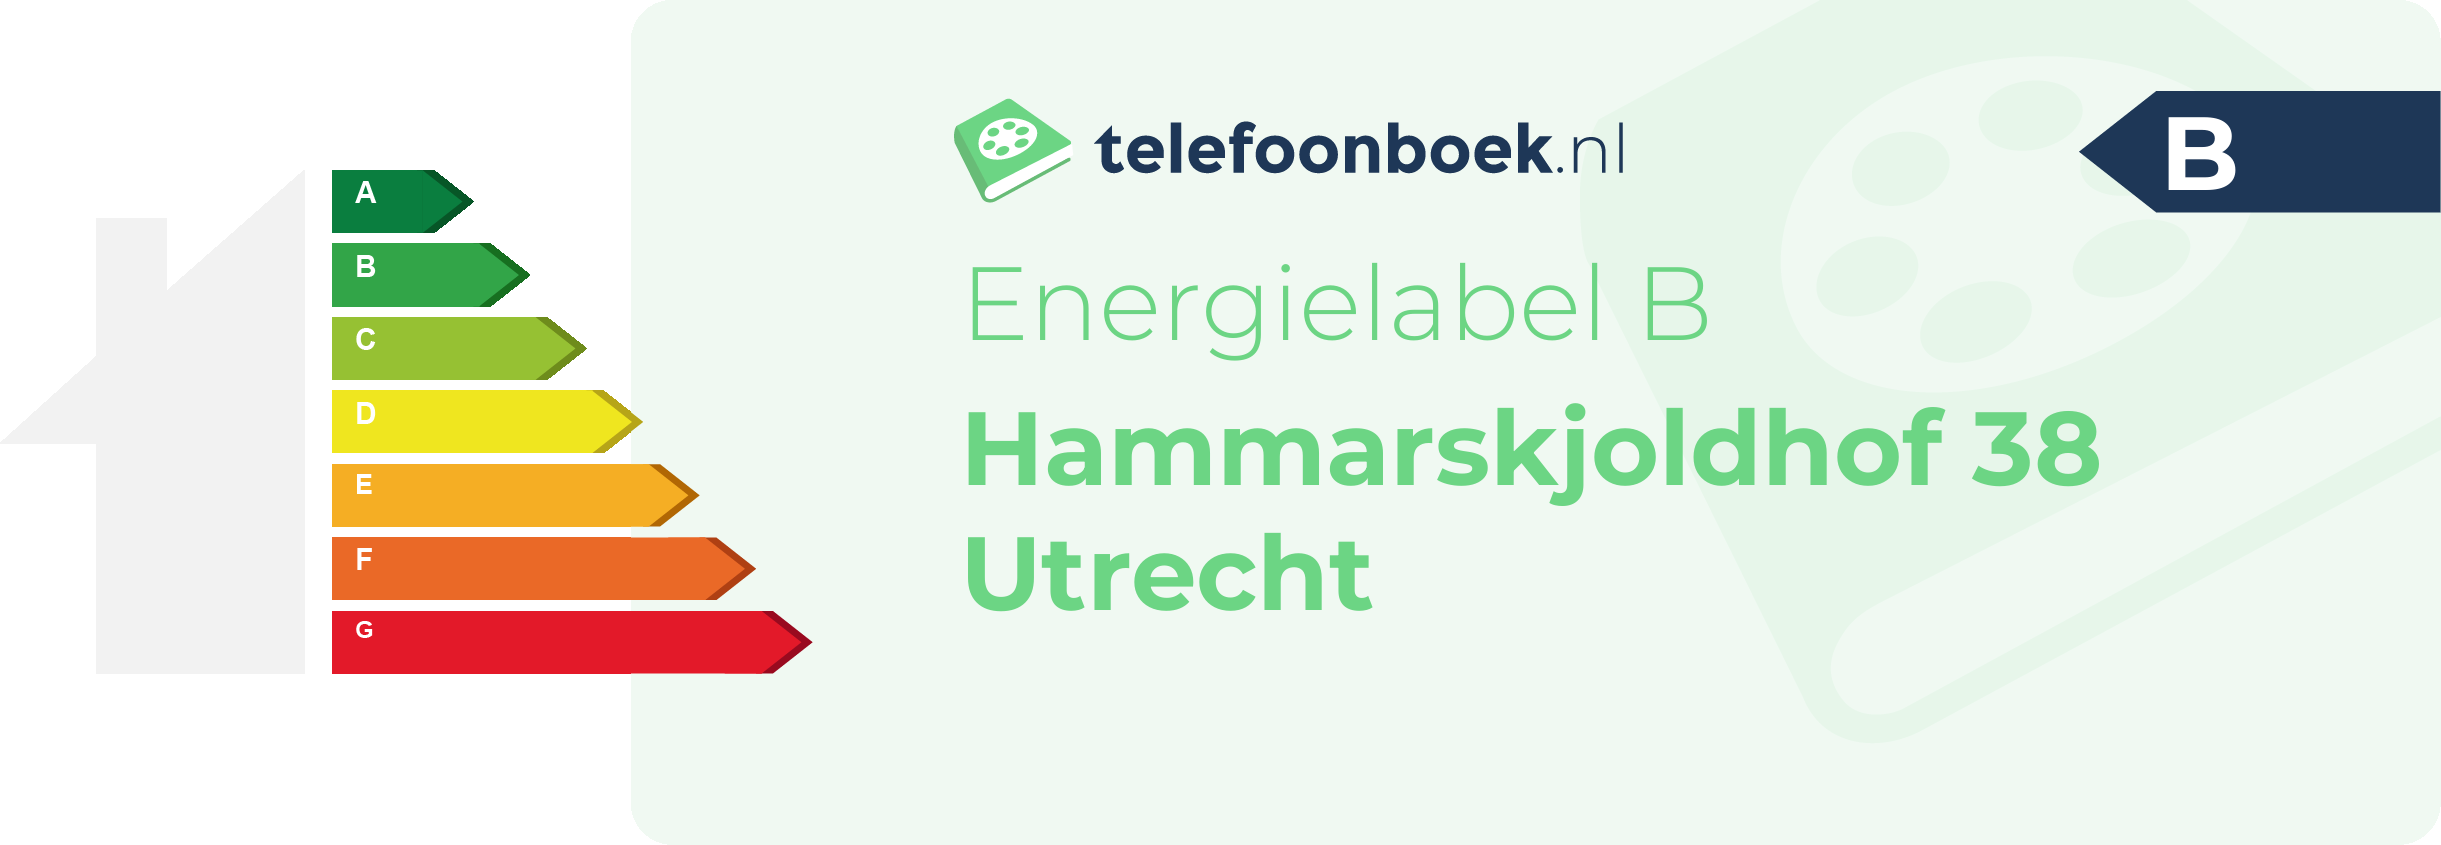 Energielabel Hammarskjoldhof 38 Utrecht